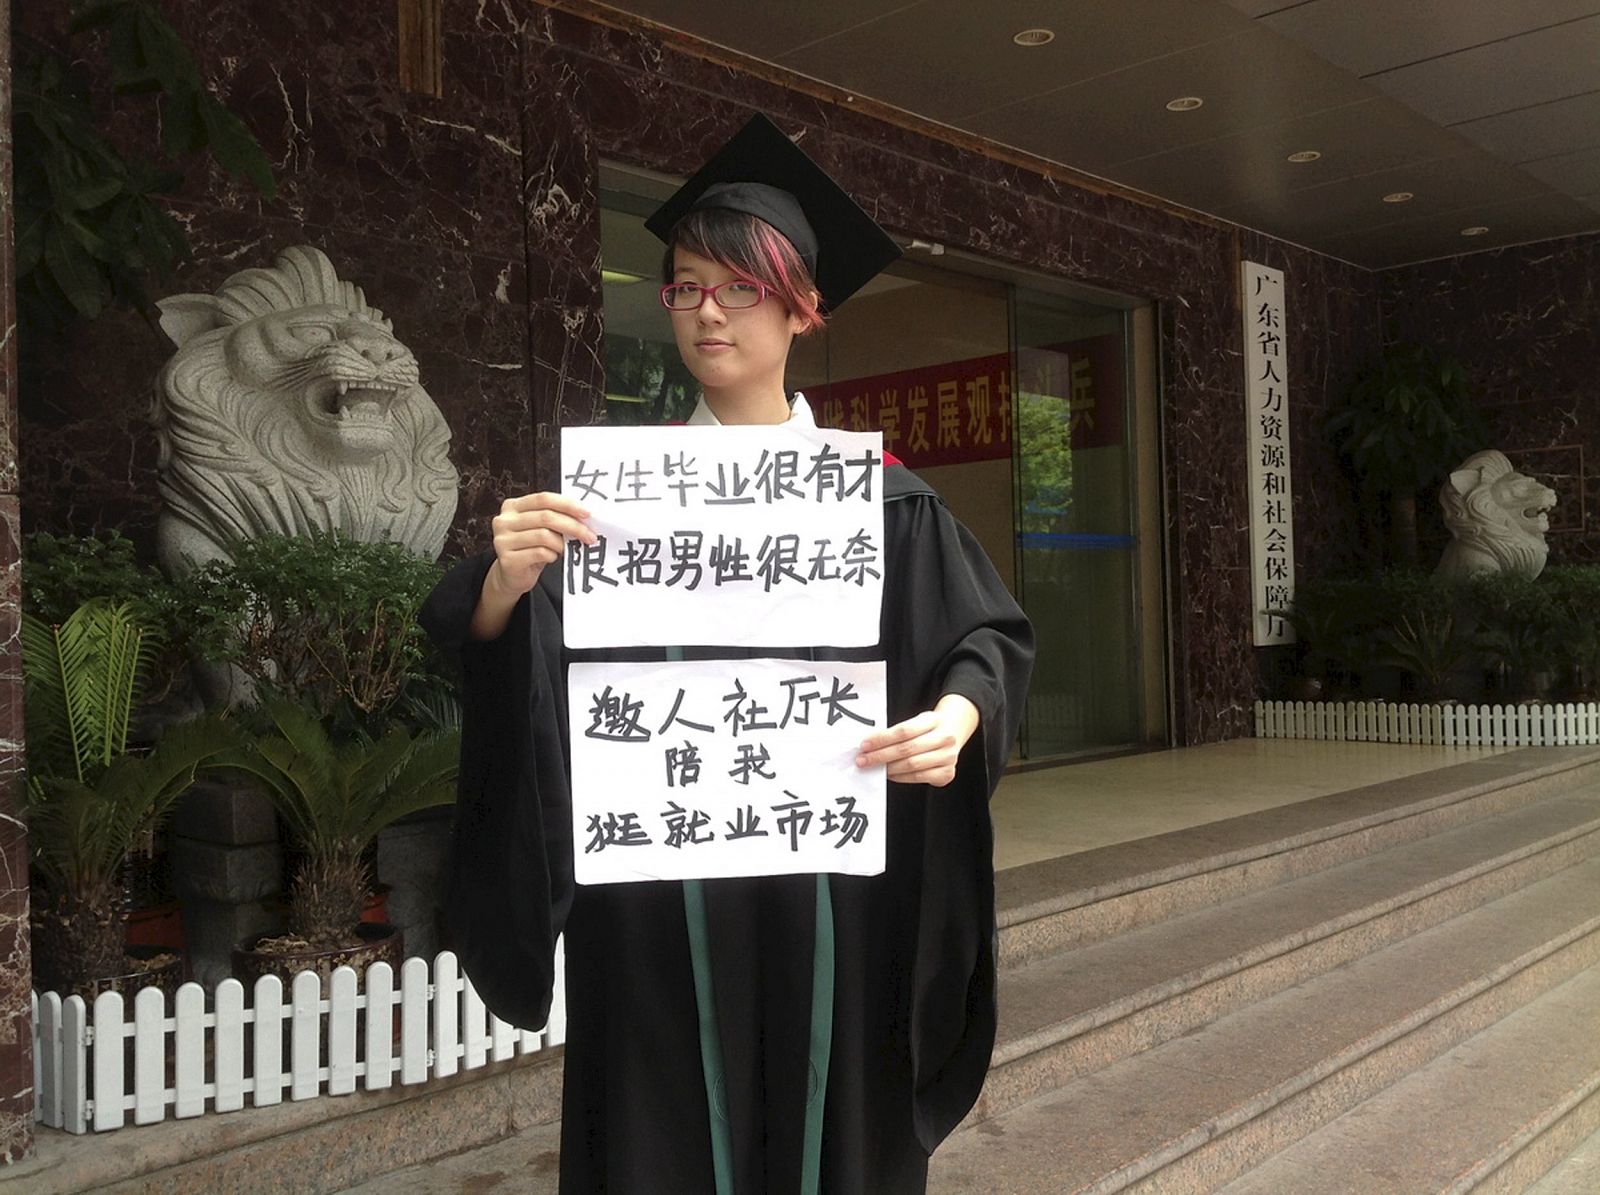 Fotografía de archivo de la activista feminista Zheng Churan. En el cartel se lee: "Las mujeres licenciadas tienen talento, contratar solo a hombres es frustrante"